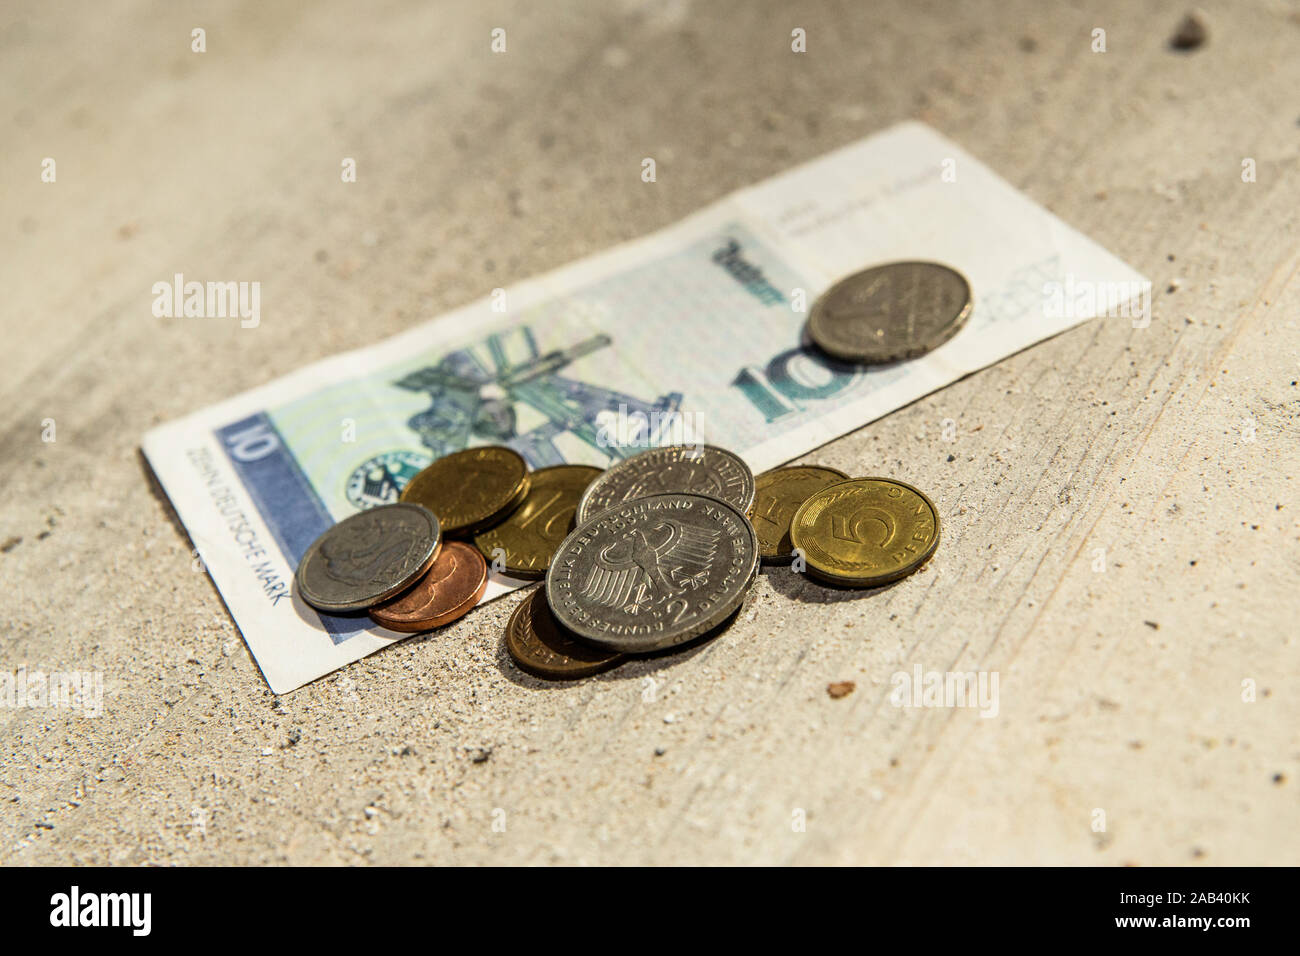 D-Mark Münzen und ein Geldschein liegen auf einem Fußboden |D-Mark monedas y un bill acostado sobre un piso| Foto de stock